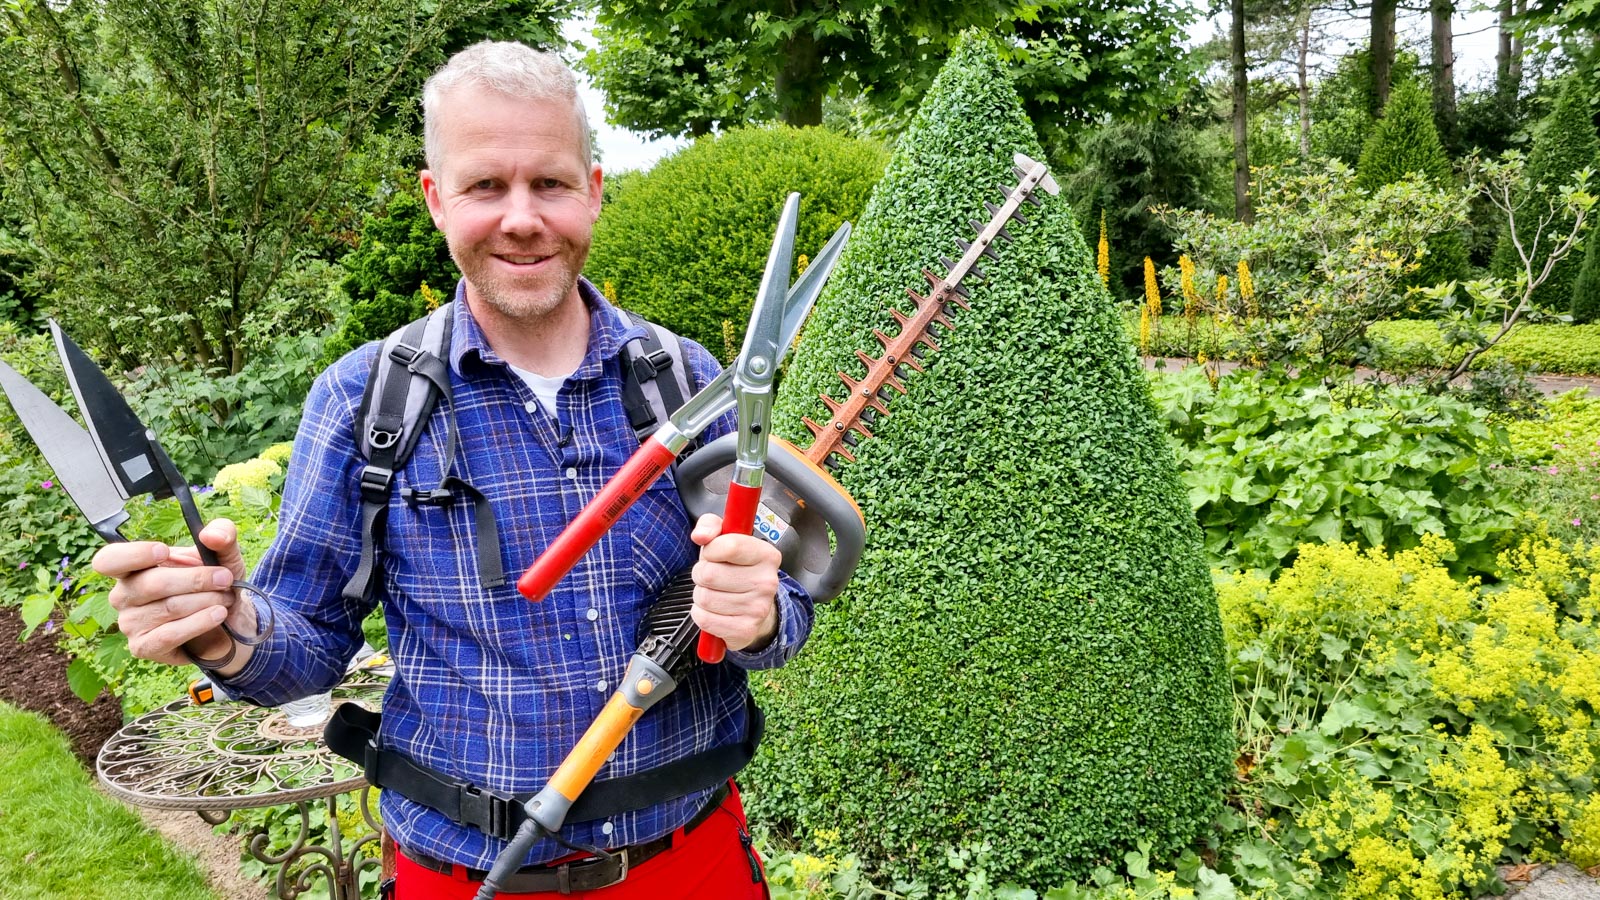 Gartenberater Philippe Dahlmann präsentiert Gartengeräte zum Buchsbaumschnitt vor einem geschnittenen Buchsbaum